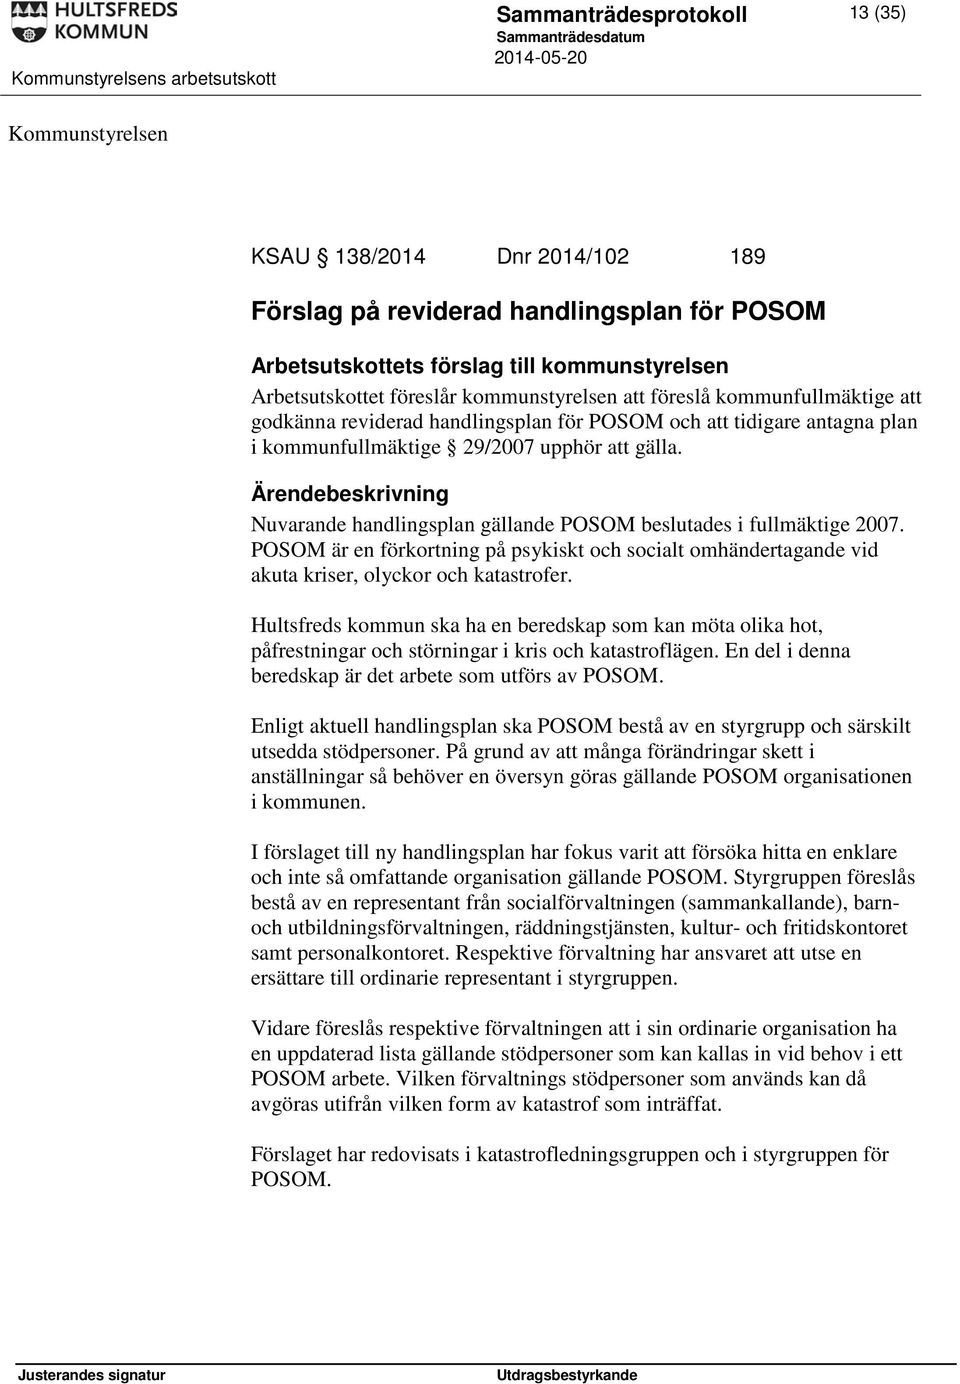 Nuvarande handlingsplan gällande POSOM beslutades i fullmäktige 2007. POSOM är en förkortning på psykiskt och socialt omhändertagande vid akuta kriser, olyckor och katastrofer.